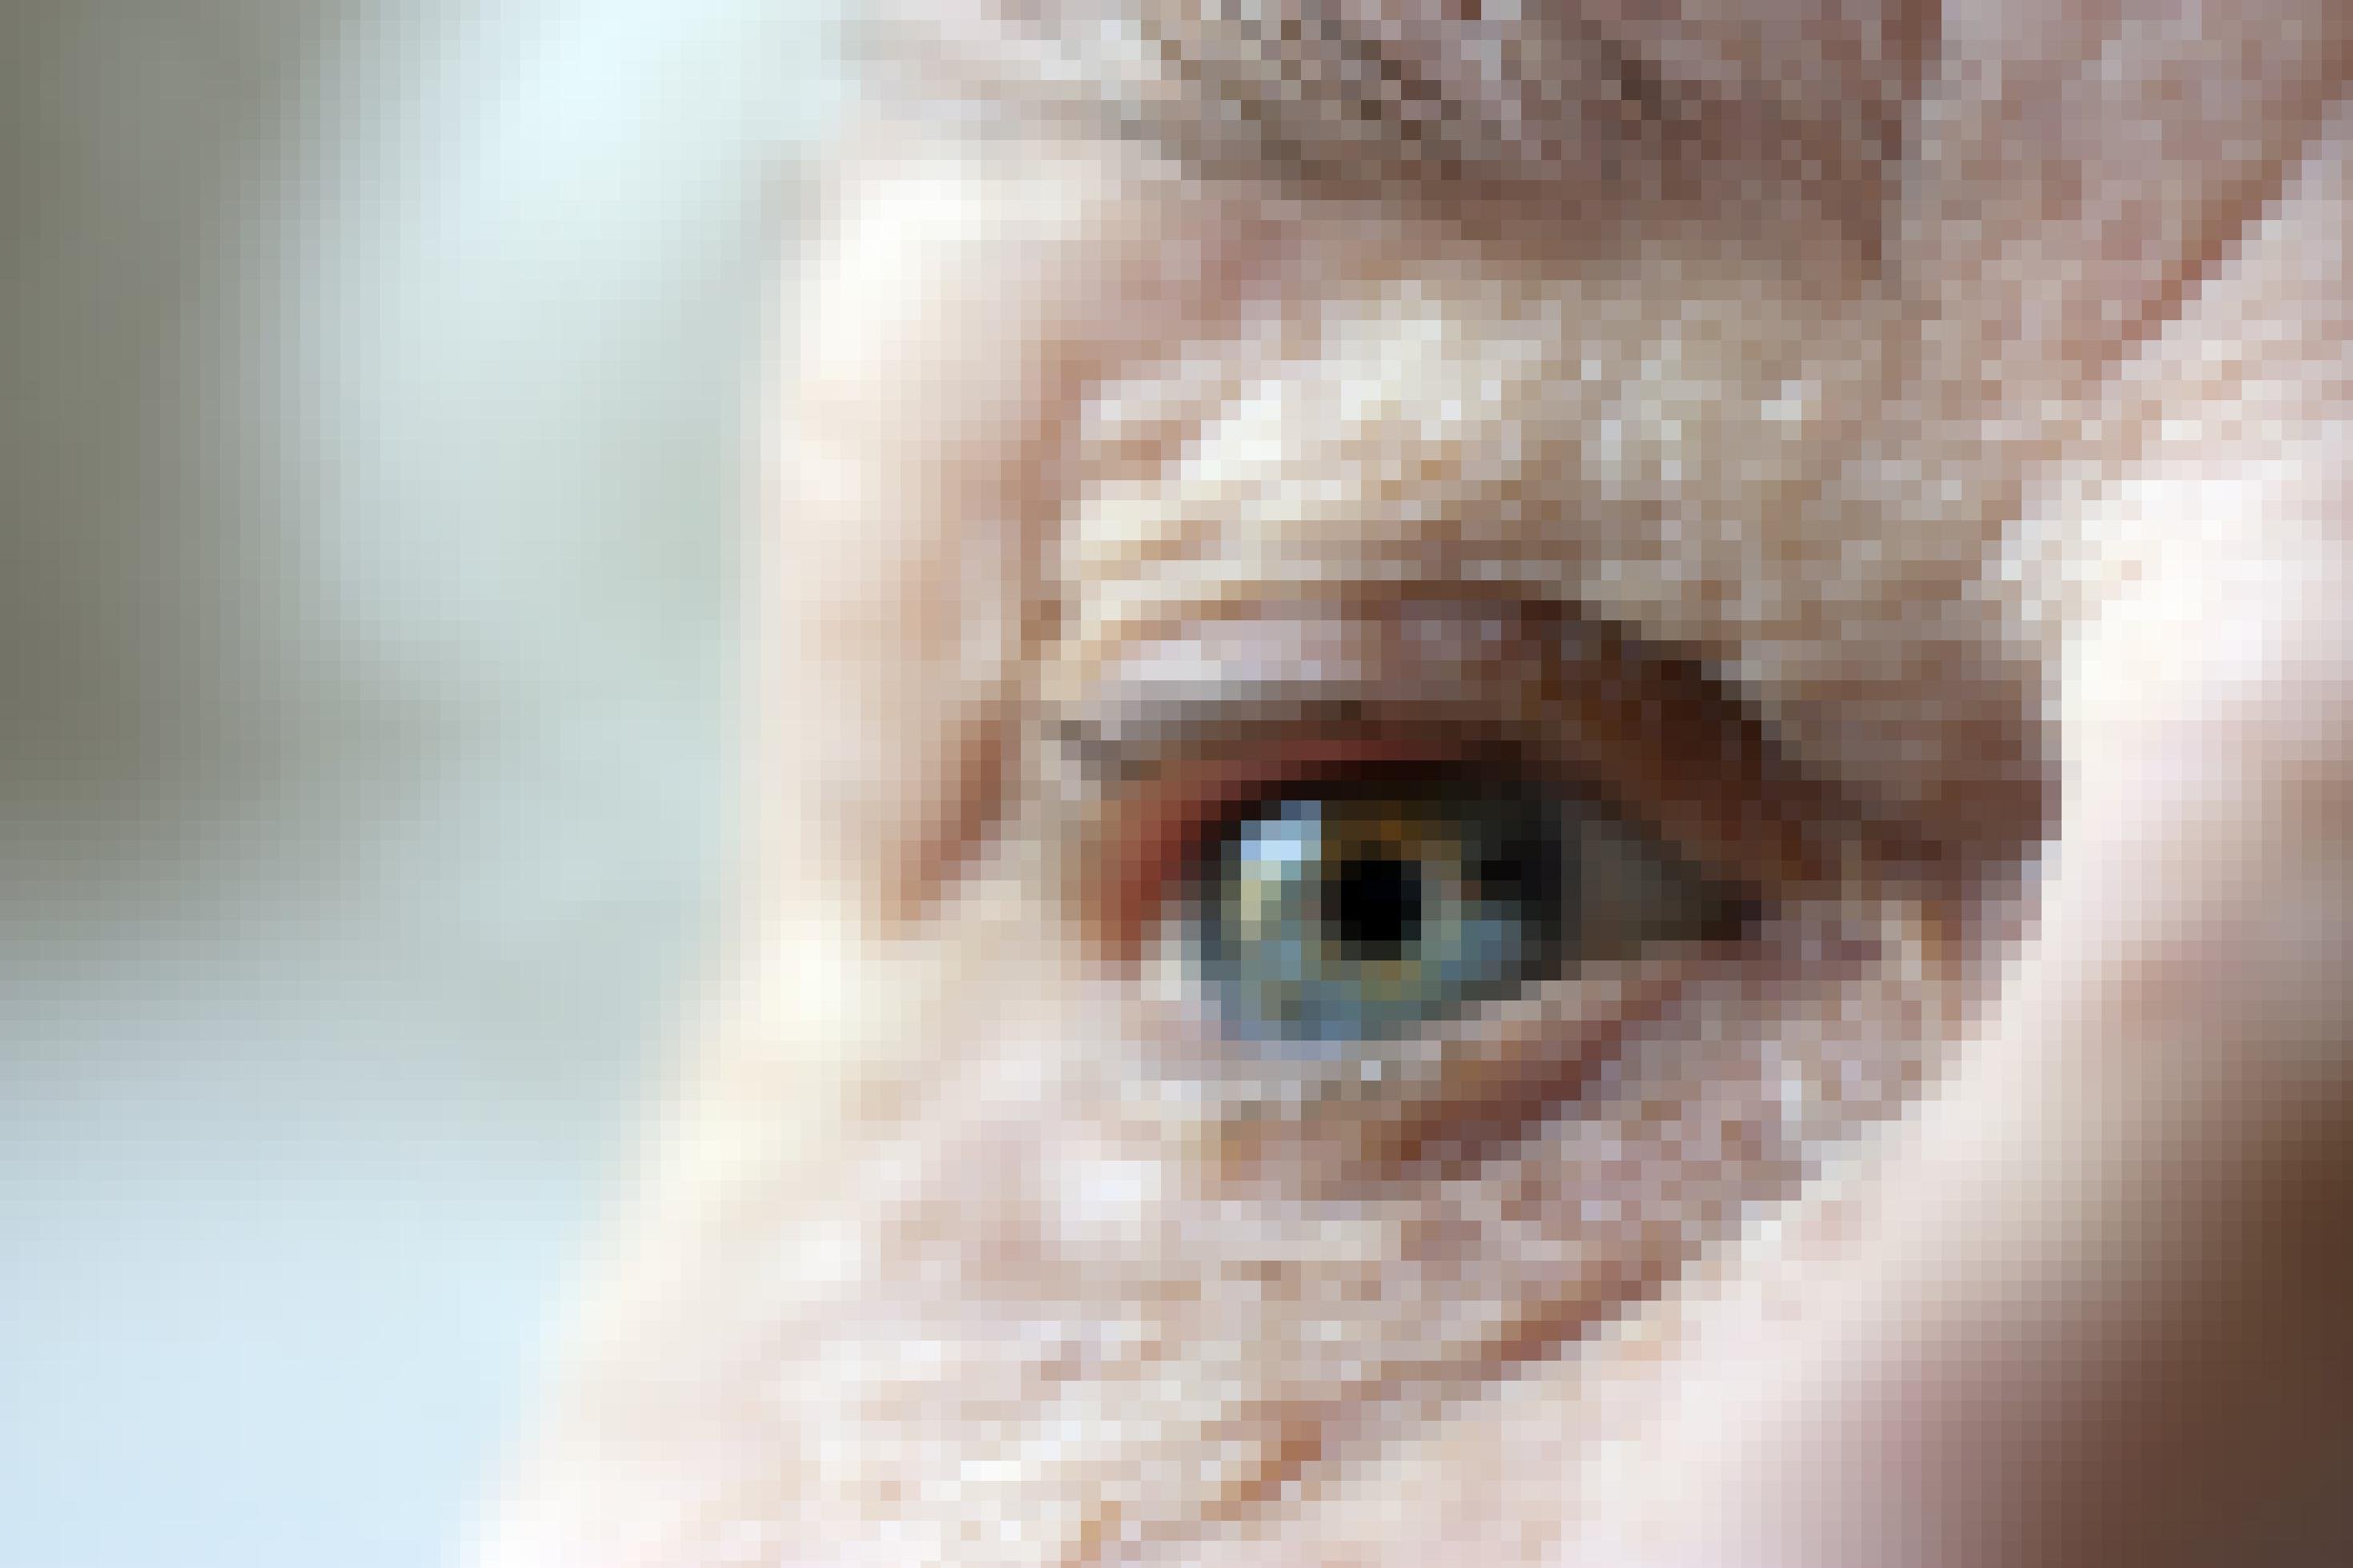 Das Foto zeigt die Nahaufnahme des Augenbereichs eines älteren Menschen. Deutlich sind um das Auge herum Falten zu erkennen. Auch ein Teil der Augenbraue mit einigen grauen Haaren darin, ist scharf zu sehen. Die Nase und die hintere Wangenpartie verschwimmen in der Unschärfe.